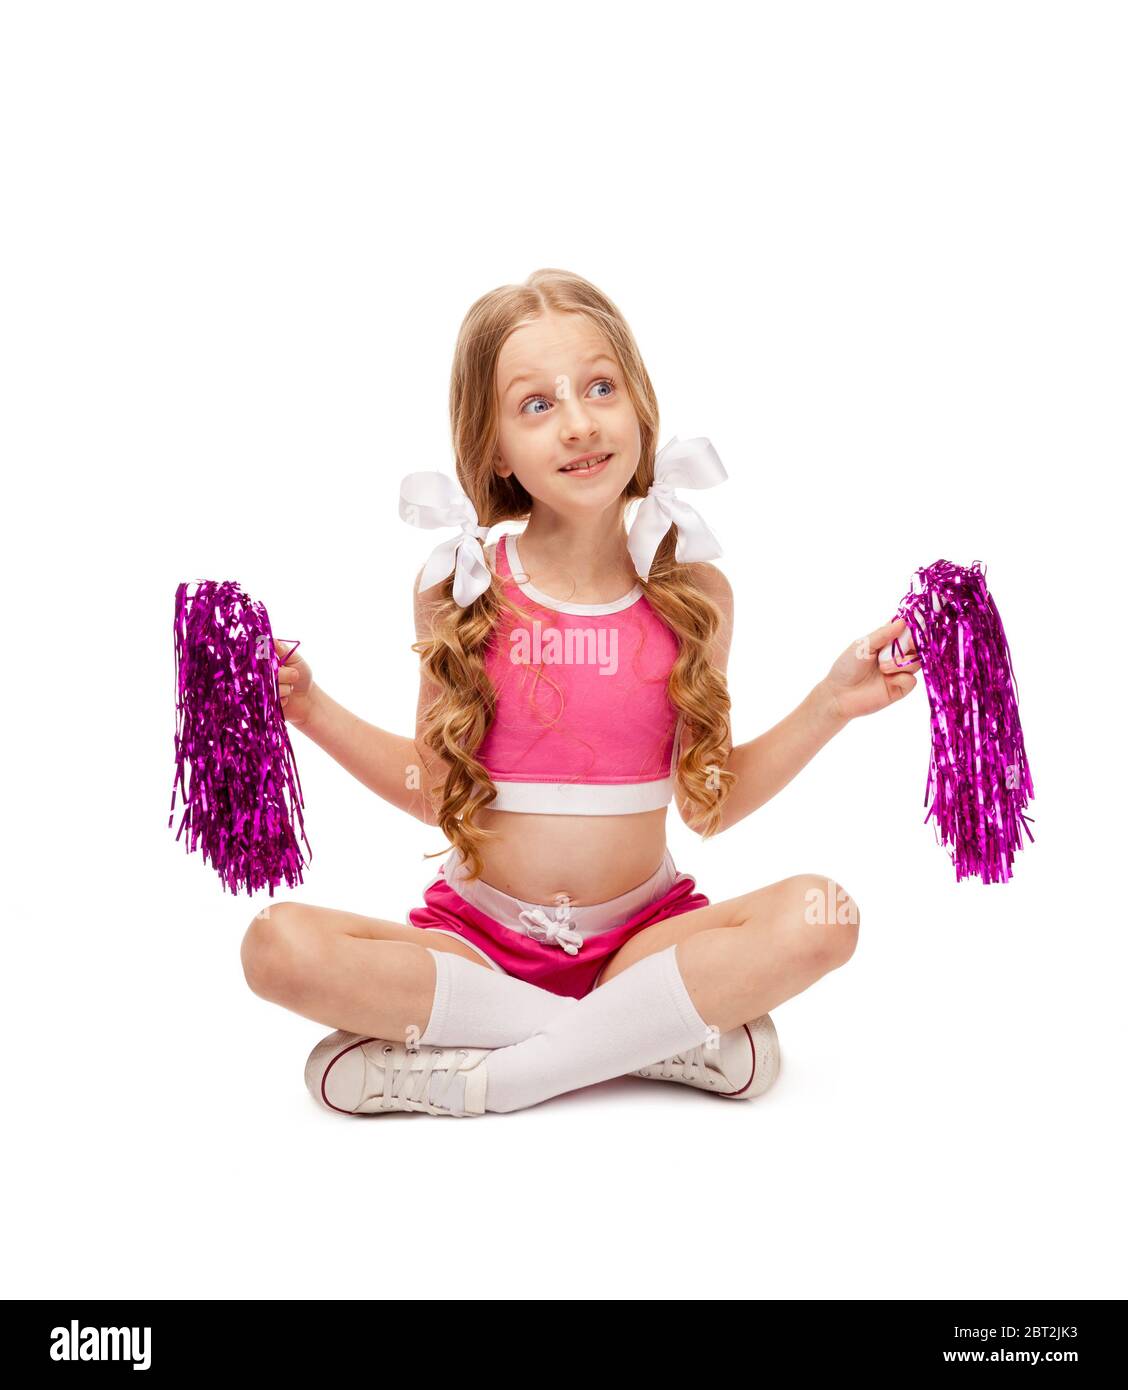 Come fare un costume da cheerleader